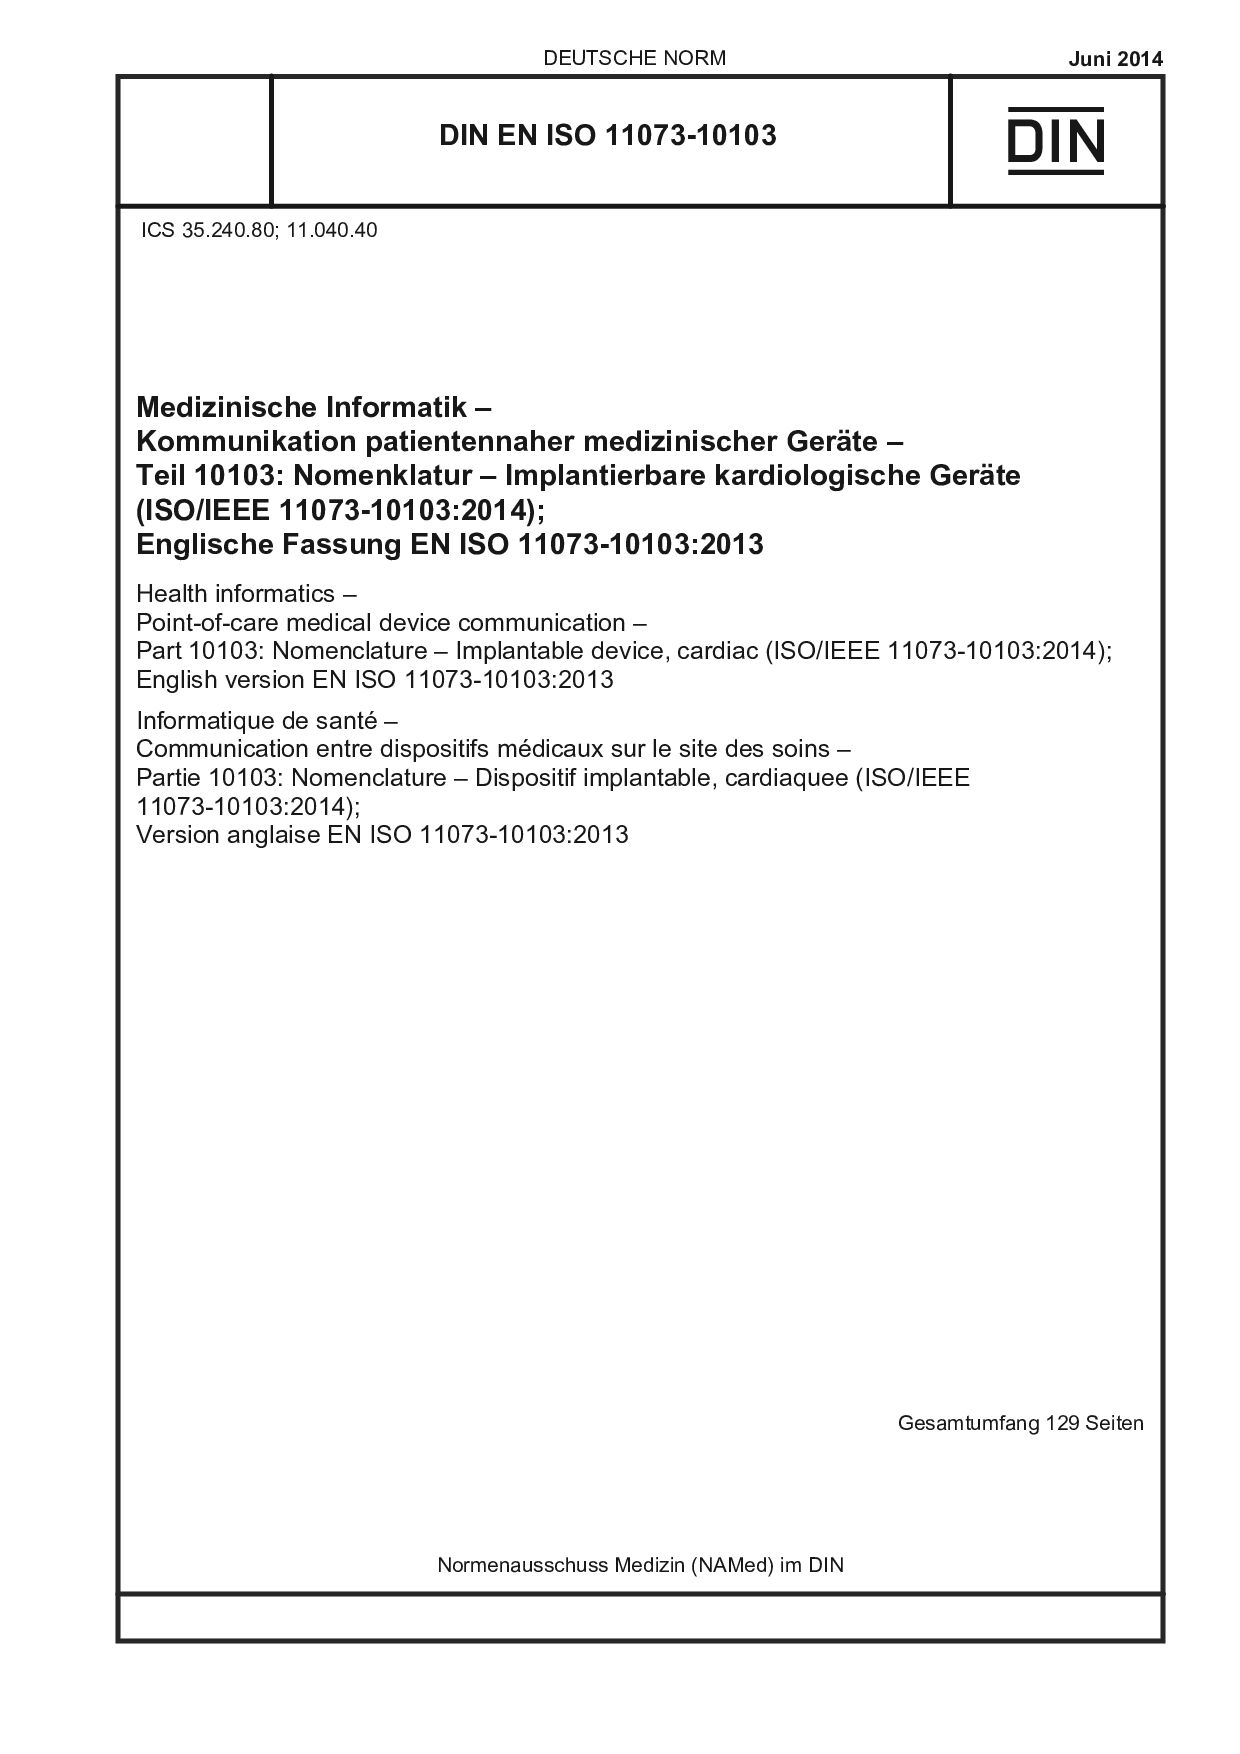 DIN EN ISO 11073-10103:2014